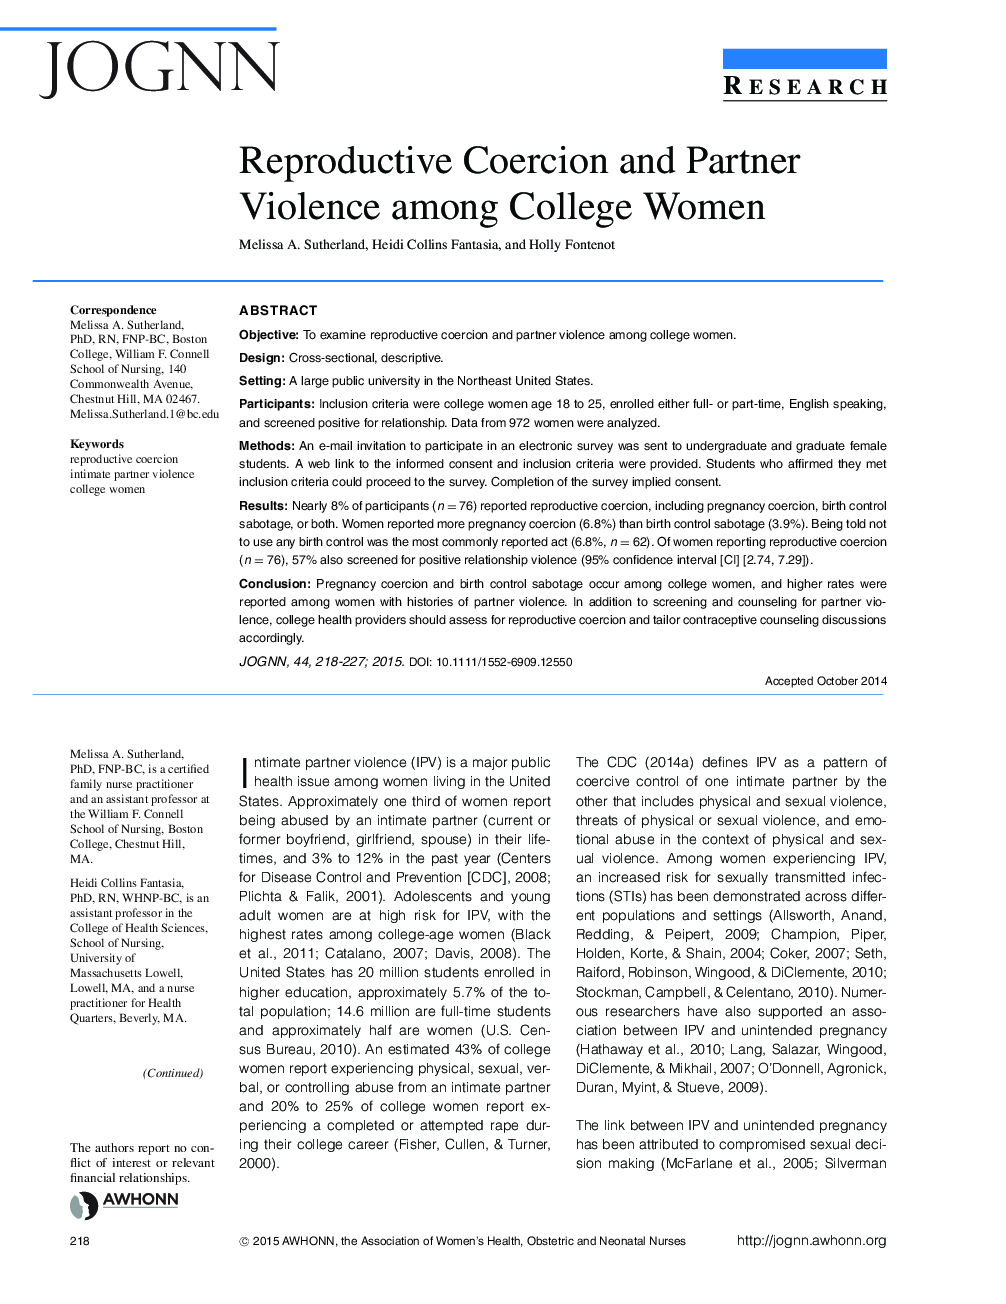 اعمال زور و خشونت شغلی در میان زنان کالج 